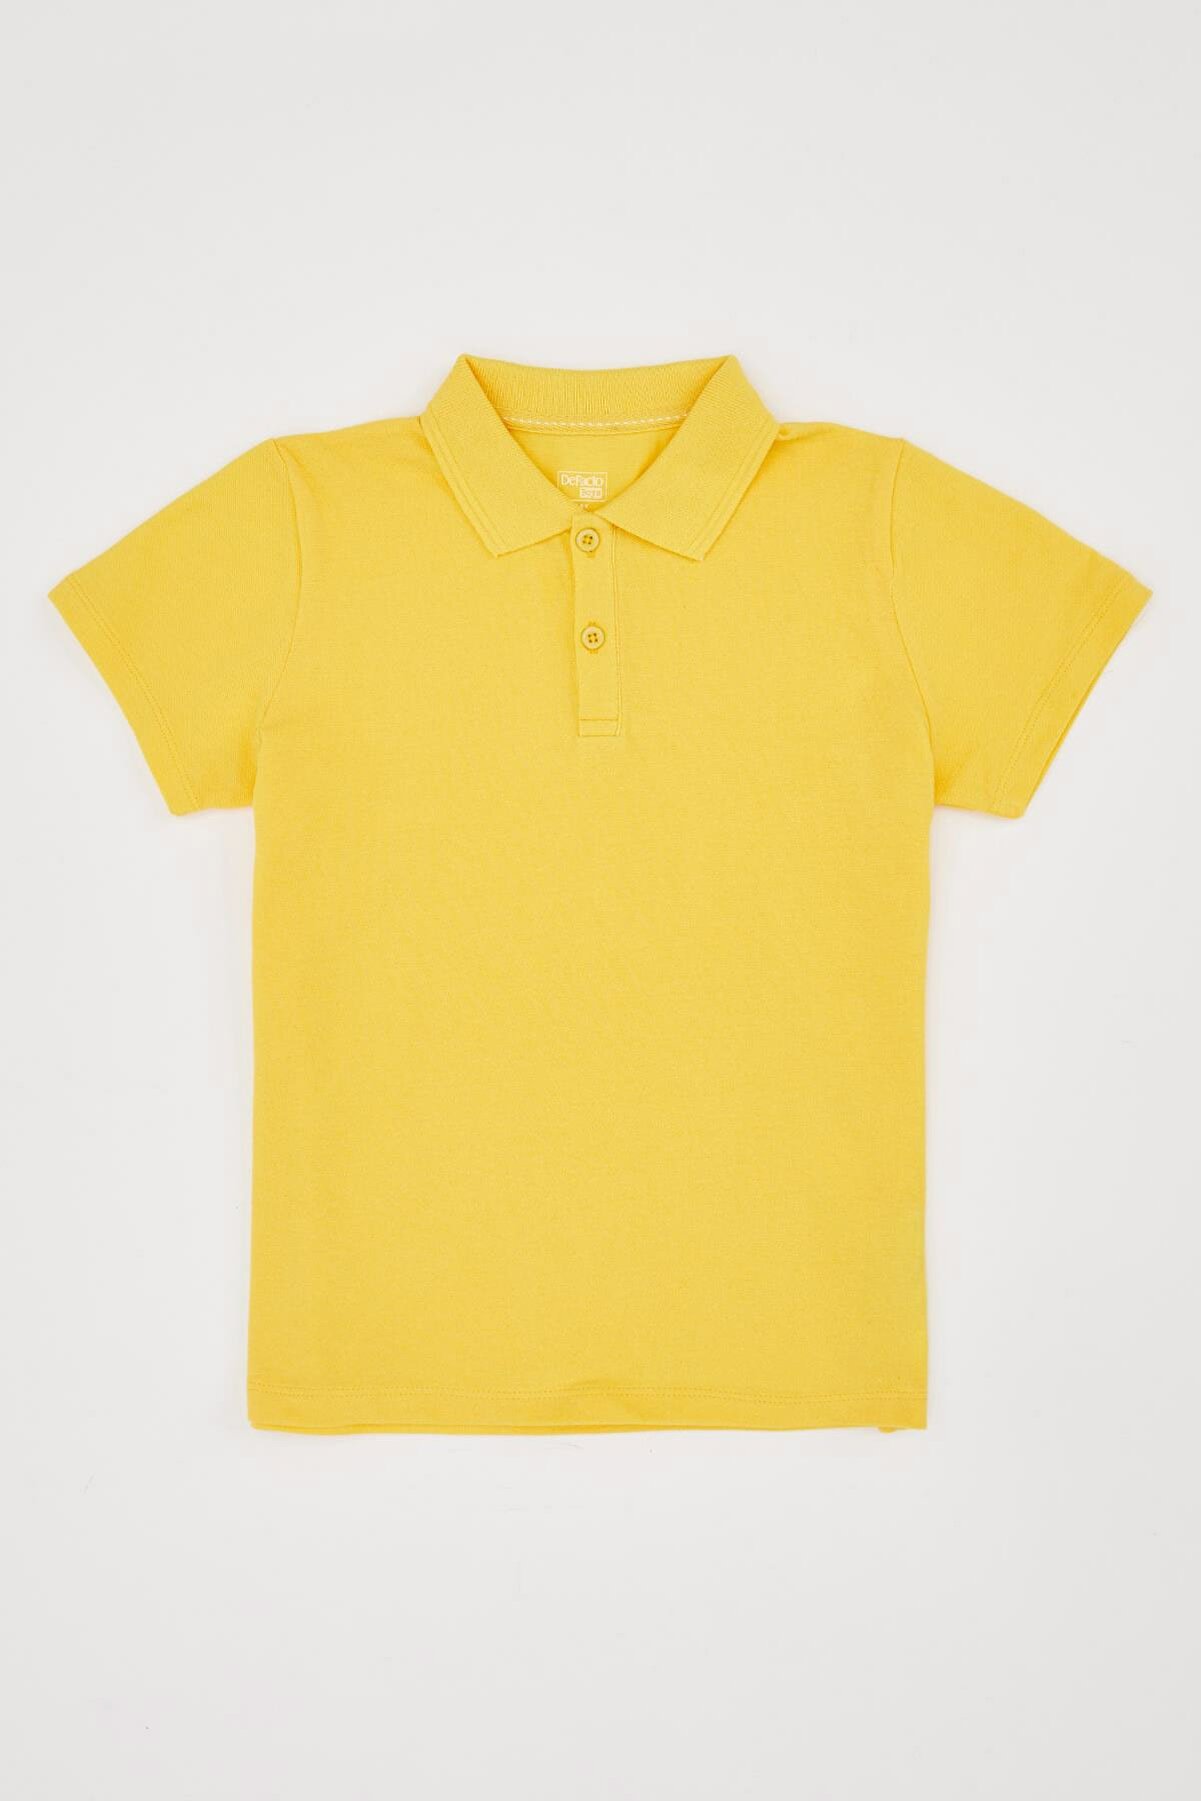 Defacto Erkek Çocuk Çocuk Bayramı Regular Fit Kısa Kollu Polo Tişört